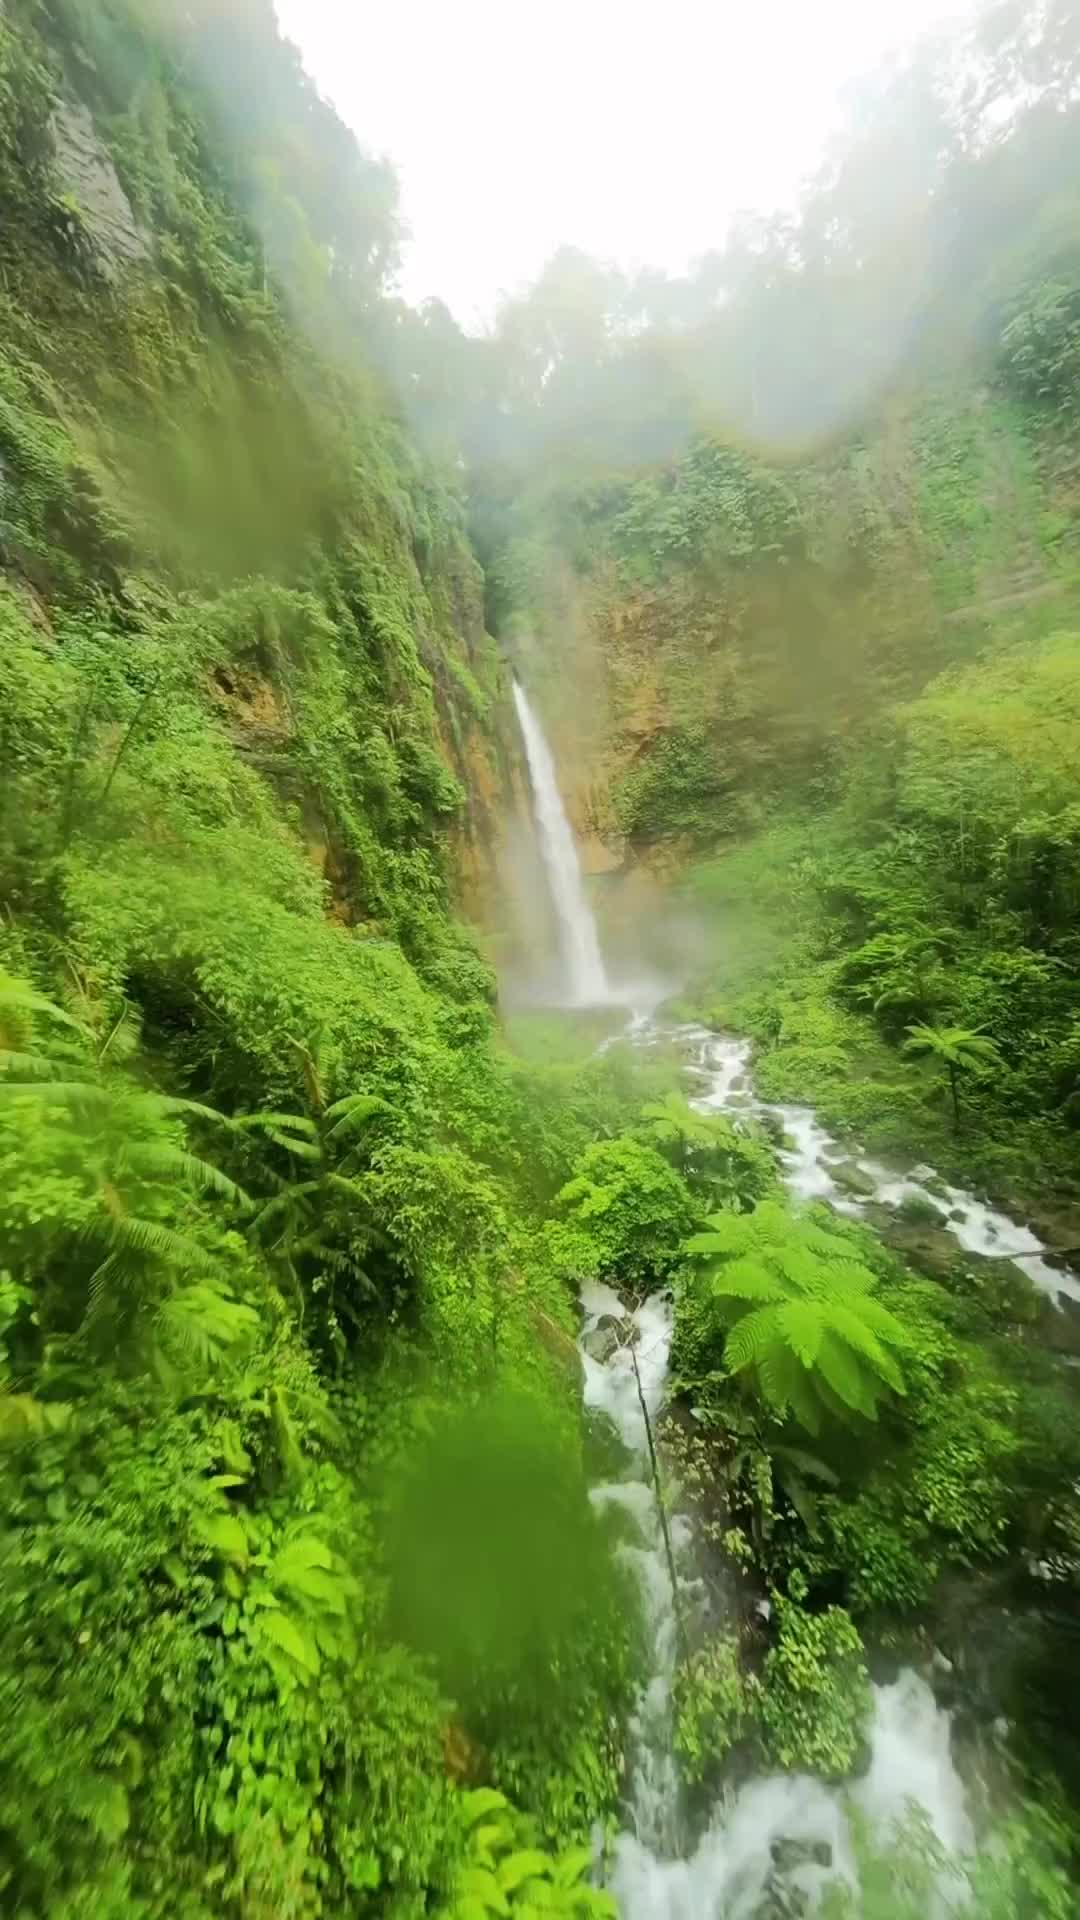 Drone Crash at Kapas Biru Waterfall Captured on GoPro